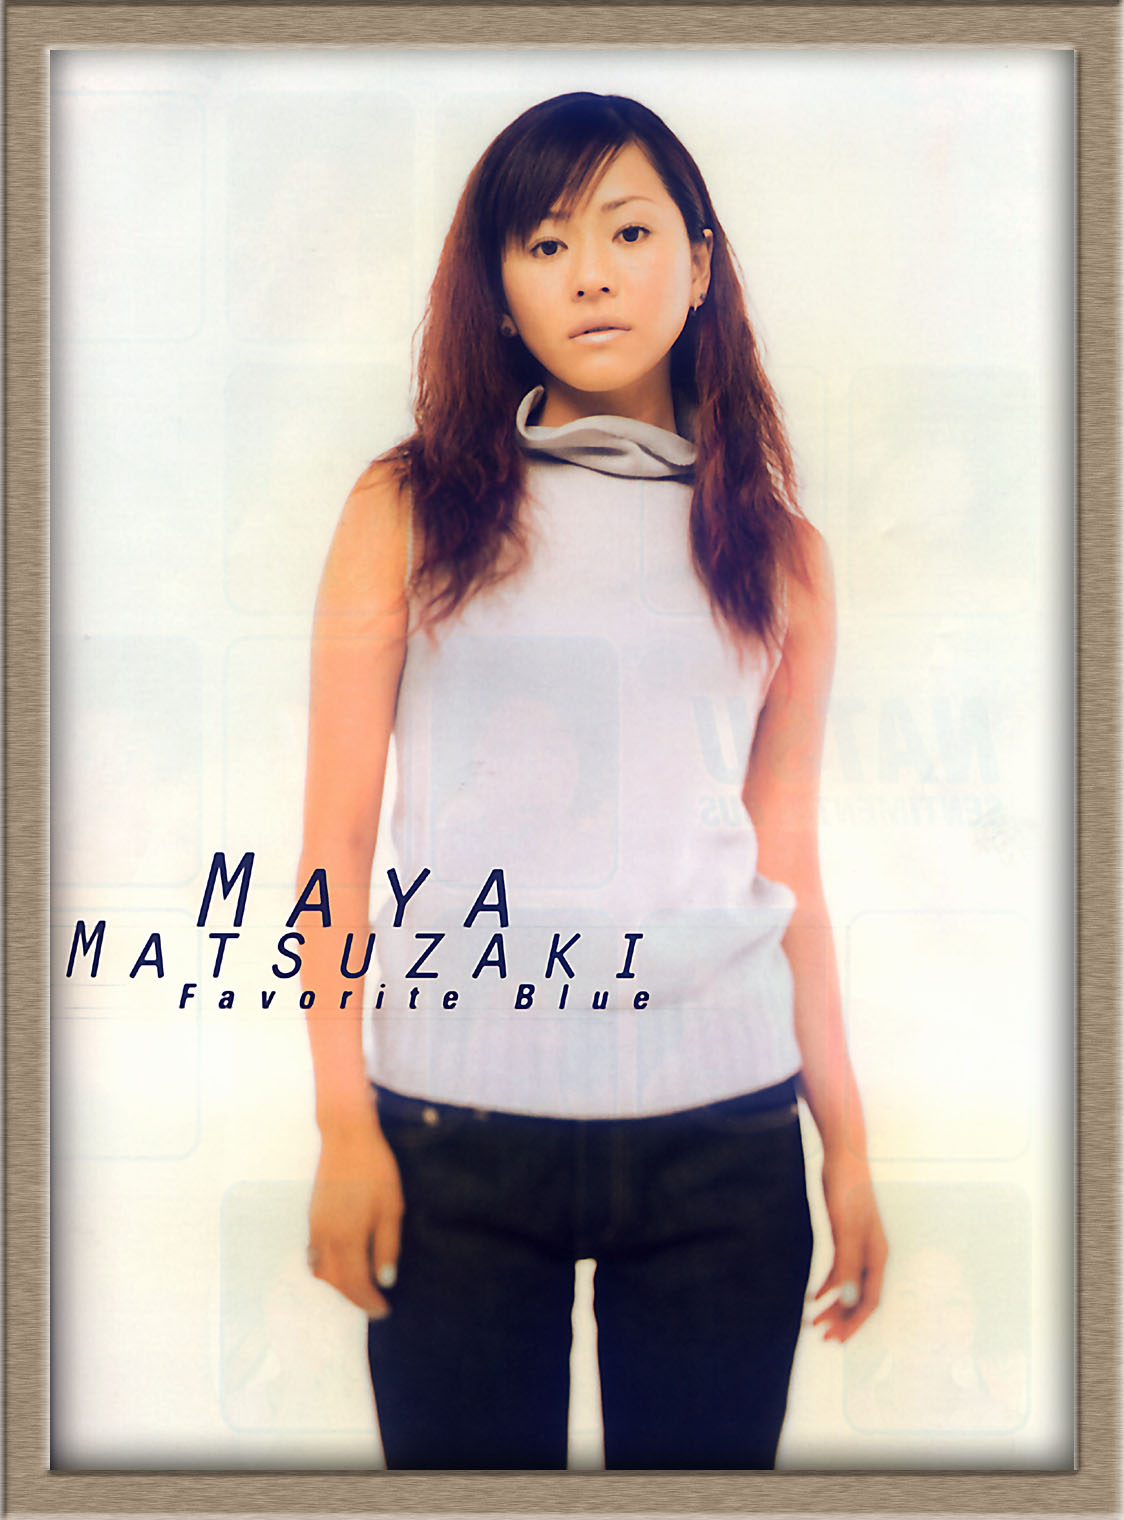 Maya Matsuzaki